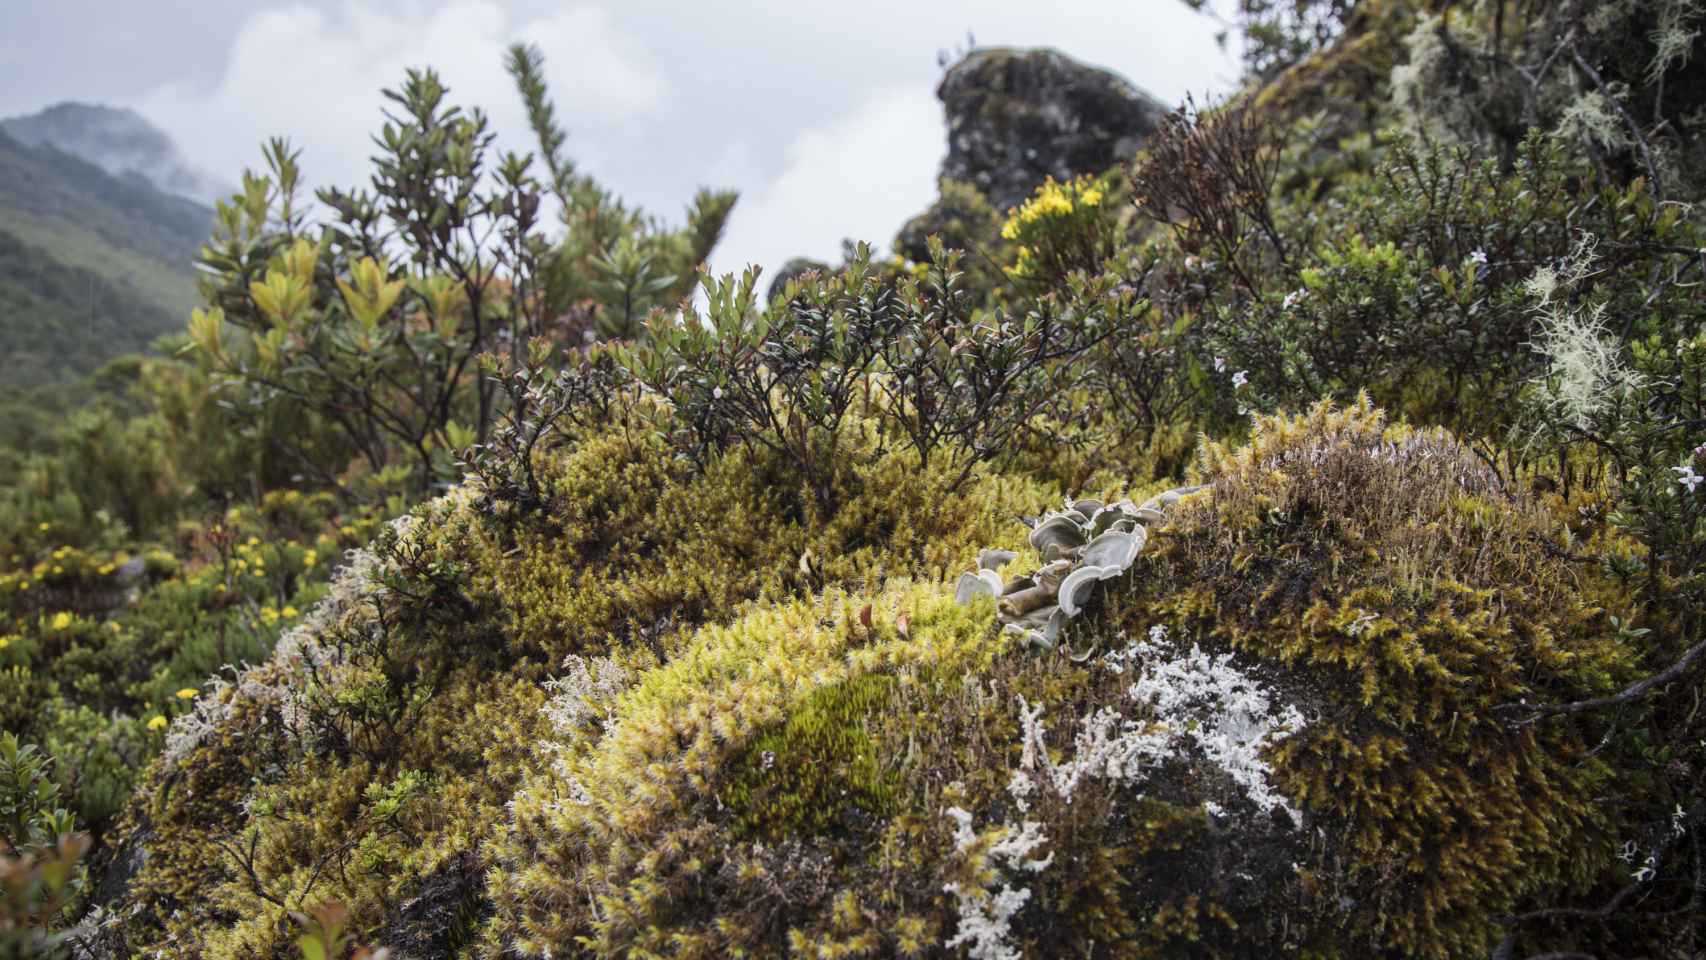 El páramo húmedo tropical de montaña caracteriza la vegetación del Cerro de la Muerte, a casi 3.500 metros de altura